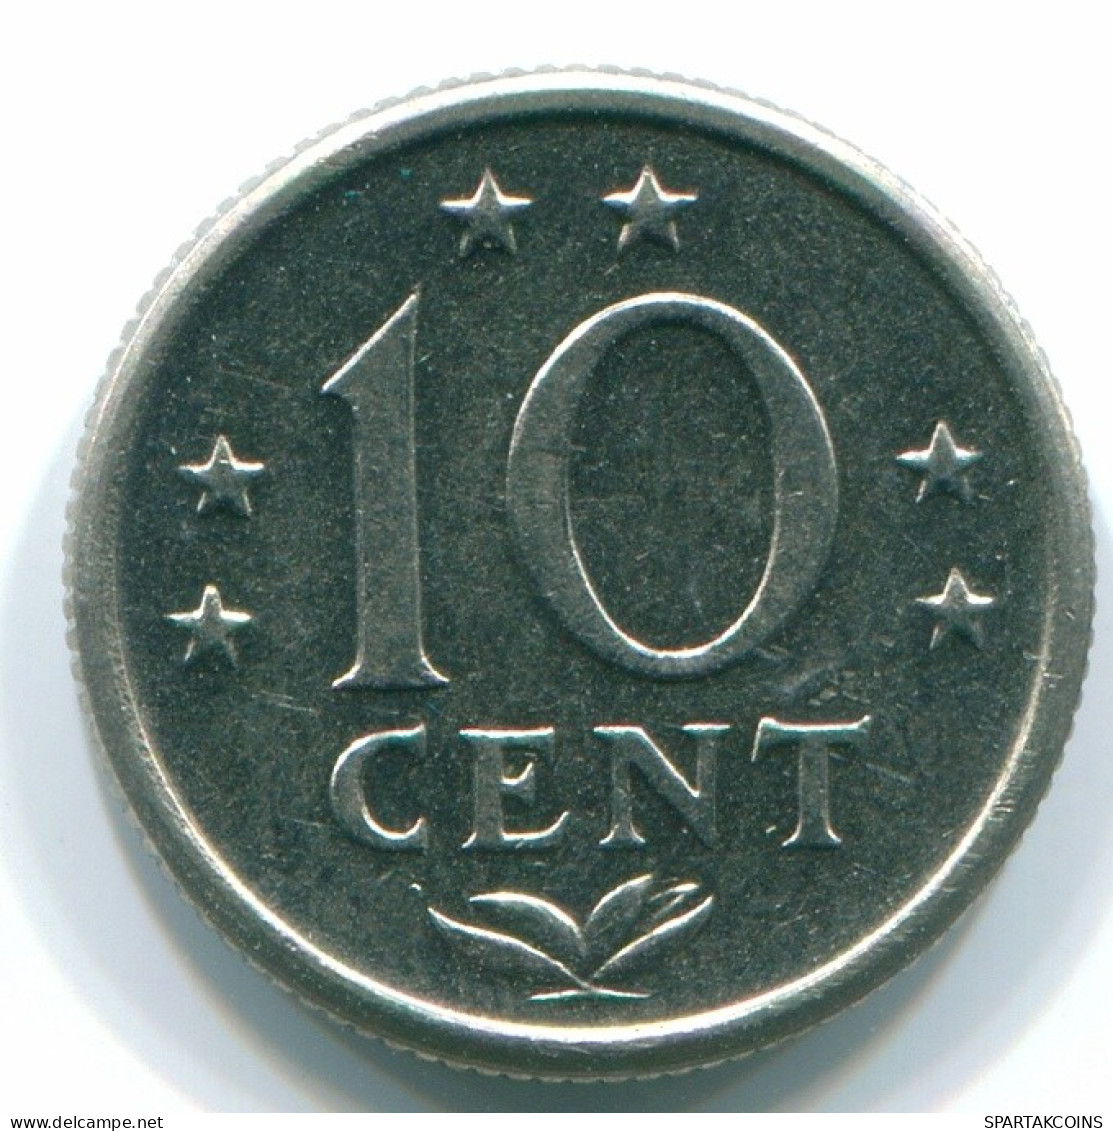 10 CENTS 1974 NIEDERLÄNDISCHE ANTILLEN Nickel Koloniale Münze #S13525.D.A - Antillas Neerlandesas